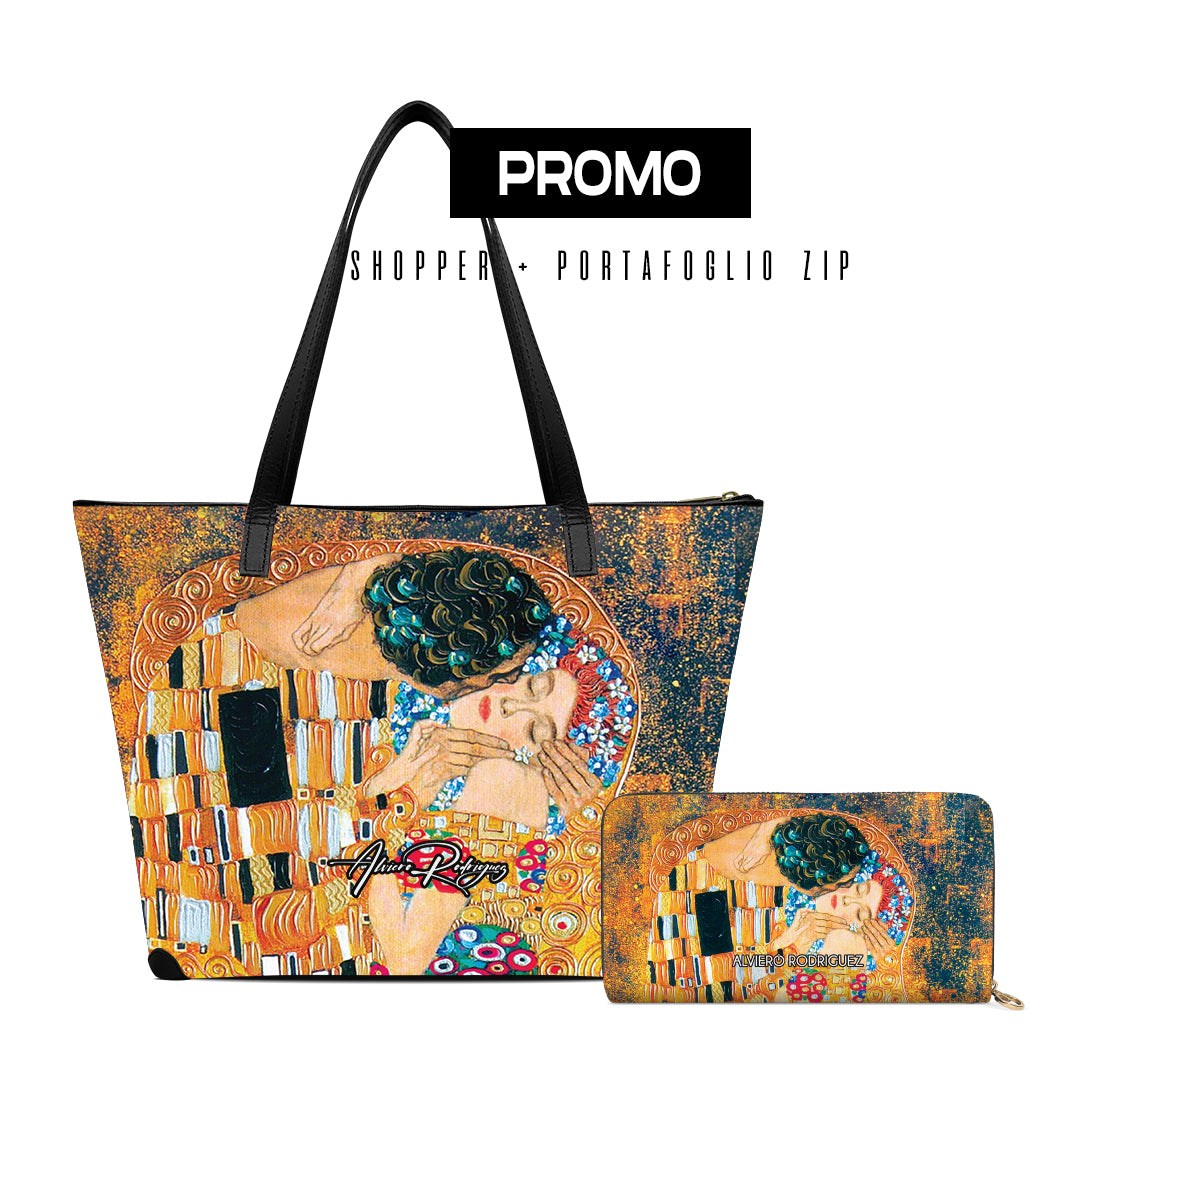 Promo Maxi Shopper + Portafoglio Zip Bacio di Klimt